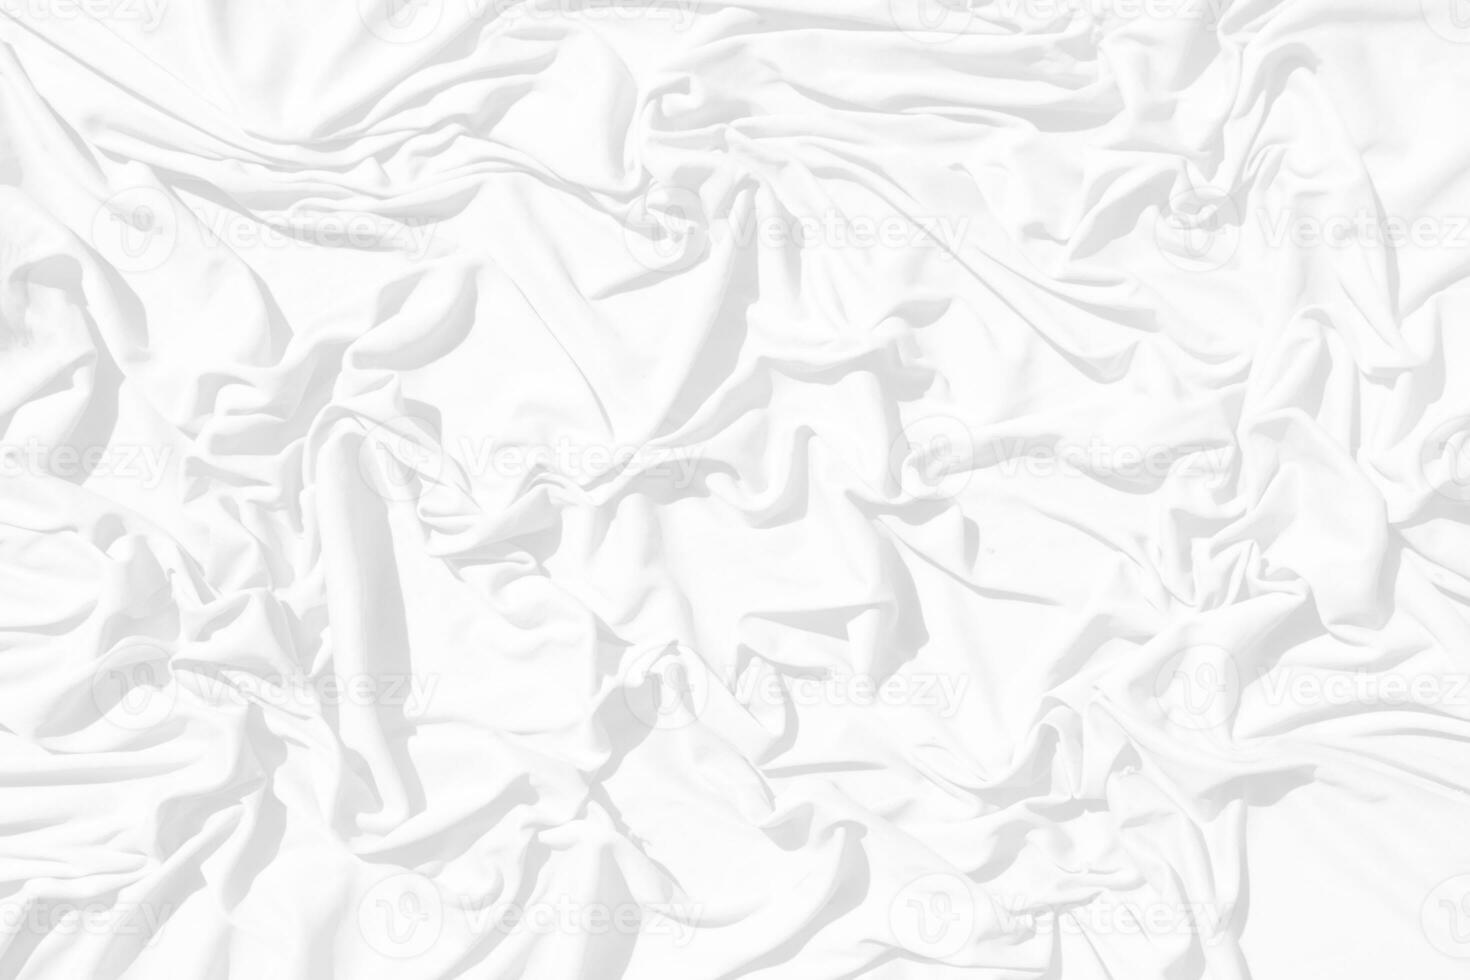 top visie abstract wit kleding achtergrond met zacht golven.golf en kromme overlappende met verschillend schaduw van kleur wit kleding stof, verfrommeld kleding stof. foto